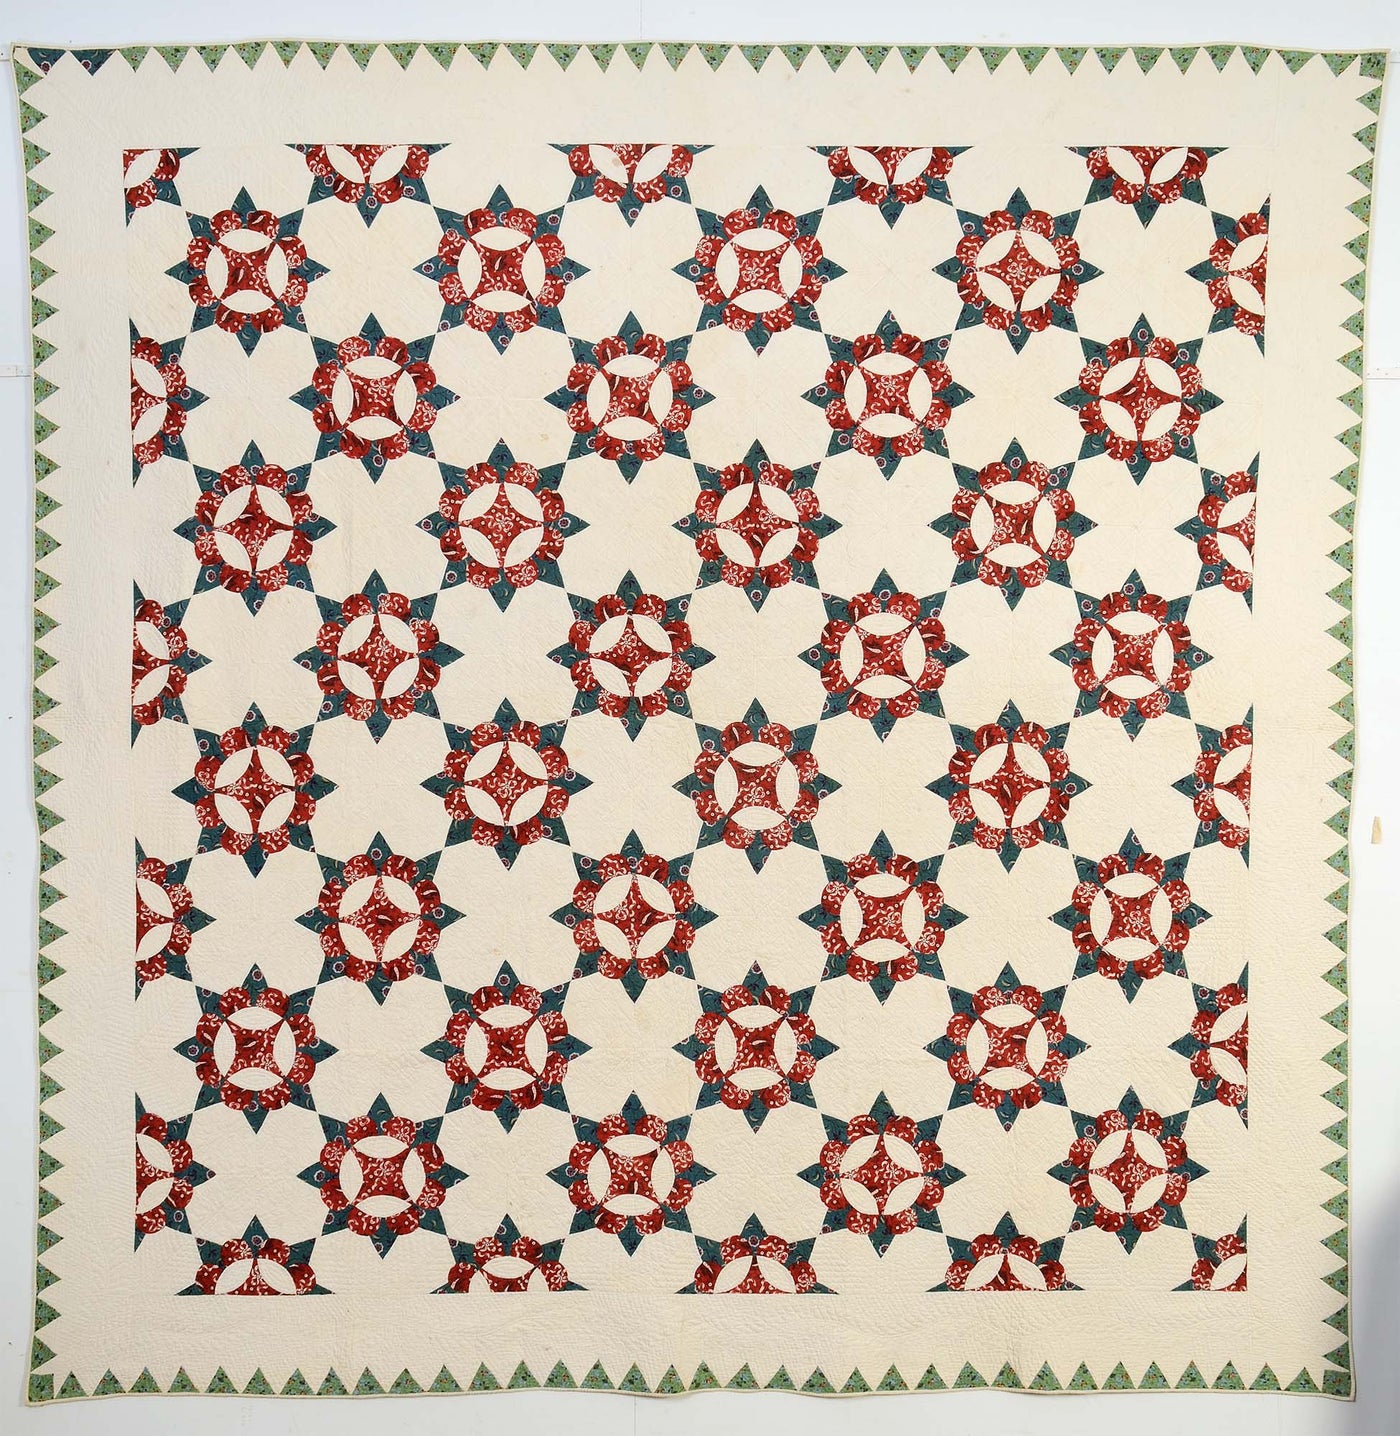 caesars-crown-quilt-circa-1850-maryland-item-1408291